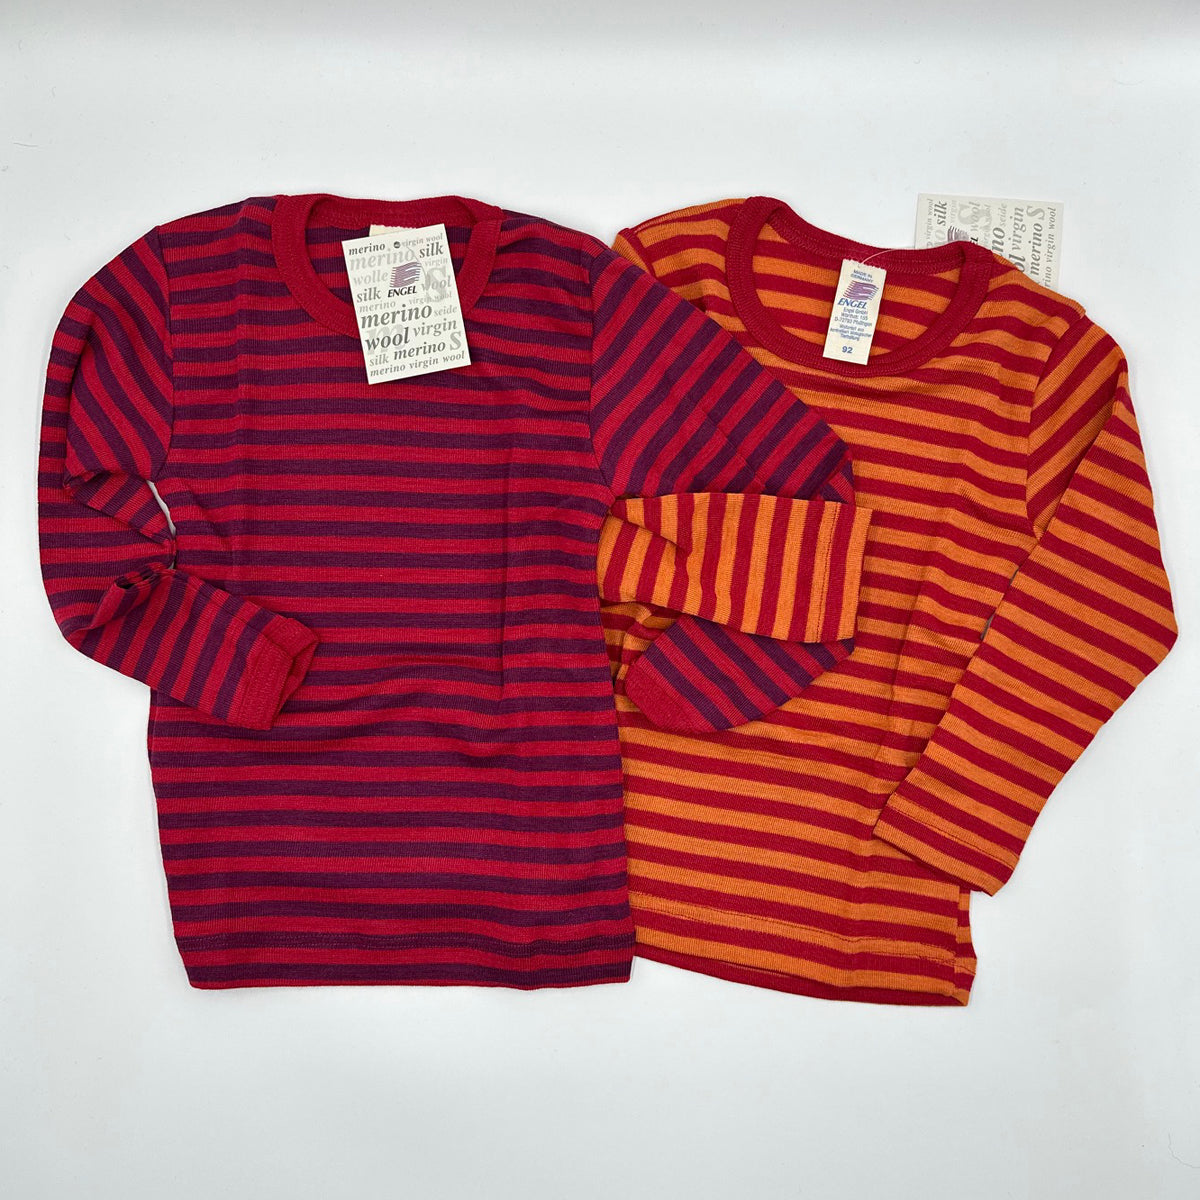 ENGEL Kids' Organic Wool/Silk Undershirt with Long Sleeves - STRIPED, VARIOUS COLORS